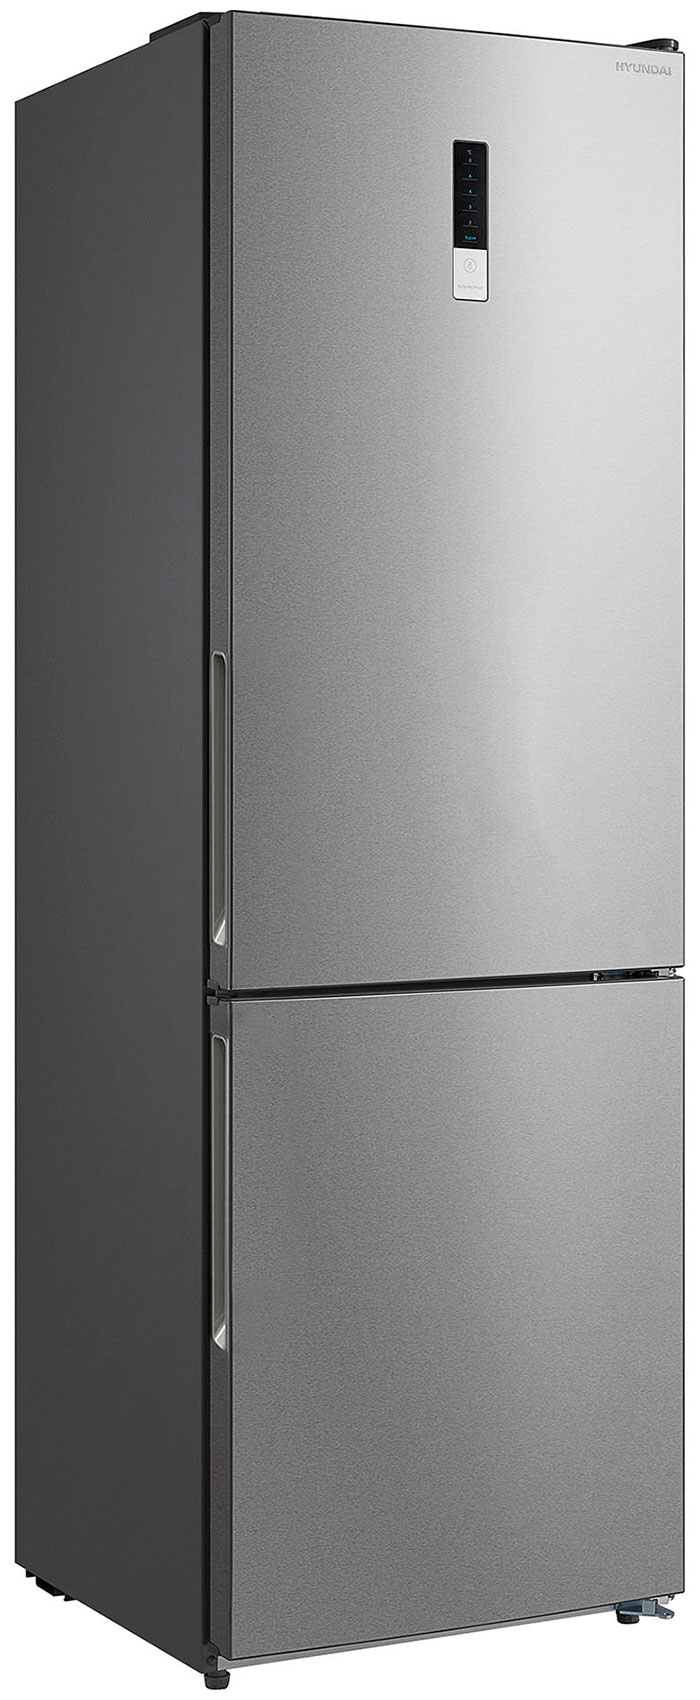 Двухкамерный холодильник Hyundai CC3595FIX нержавеющая сталь двухкамерный холодильник hyundai cc3595fix нержавеющая сталь